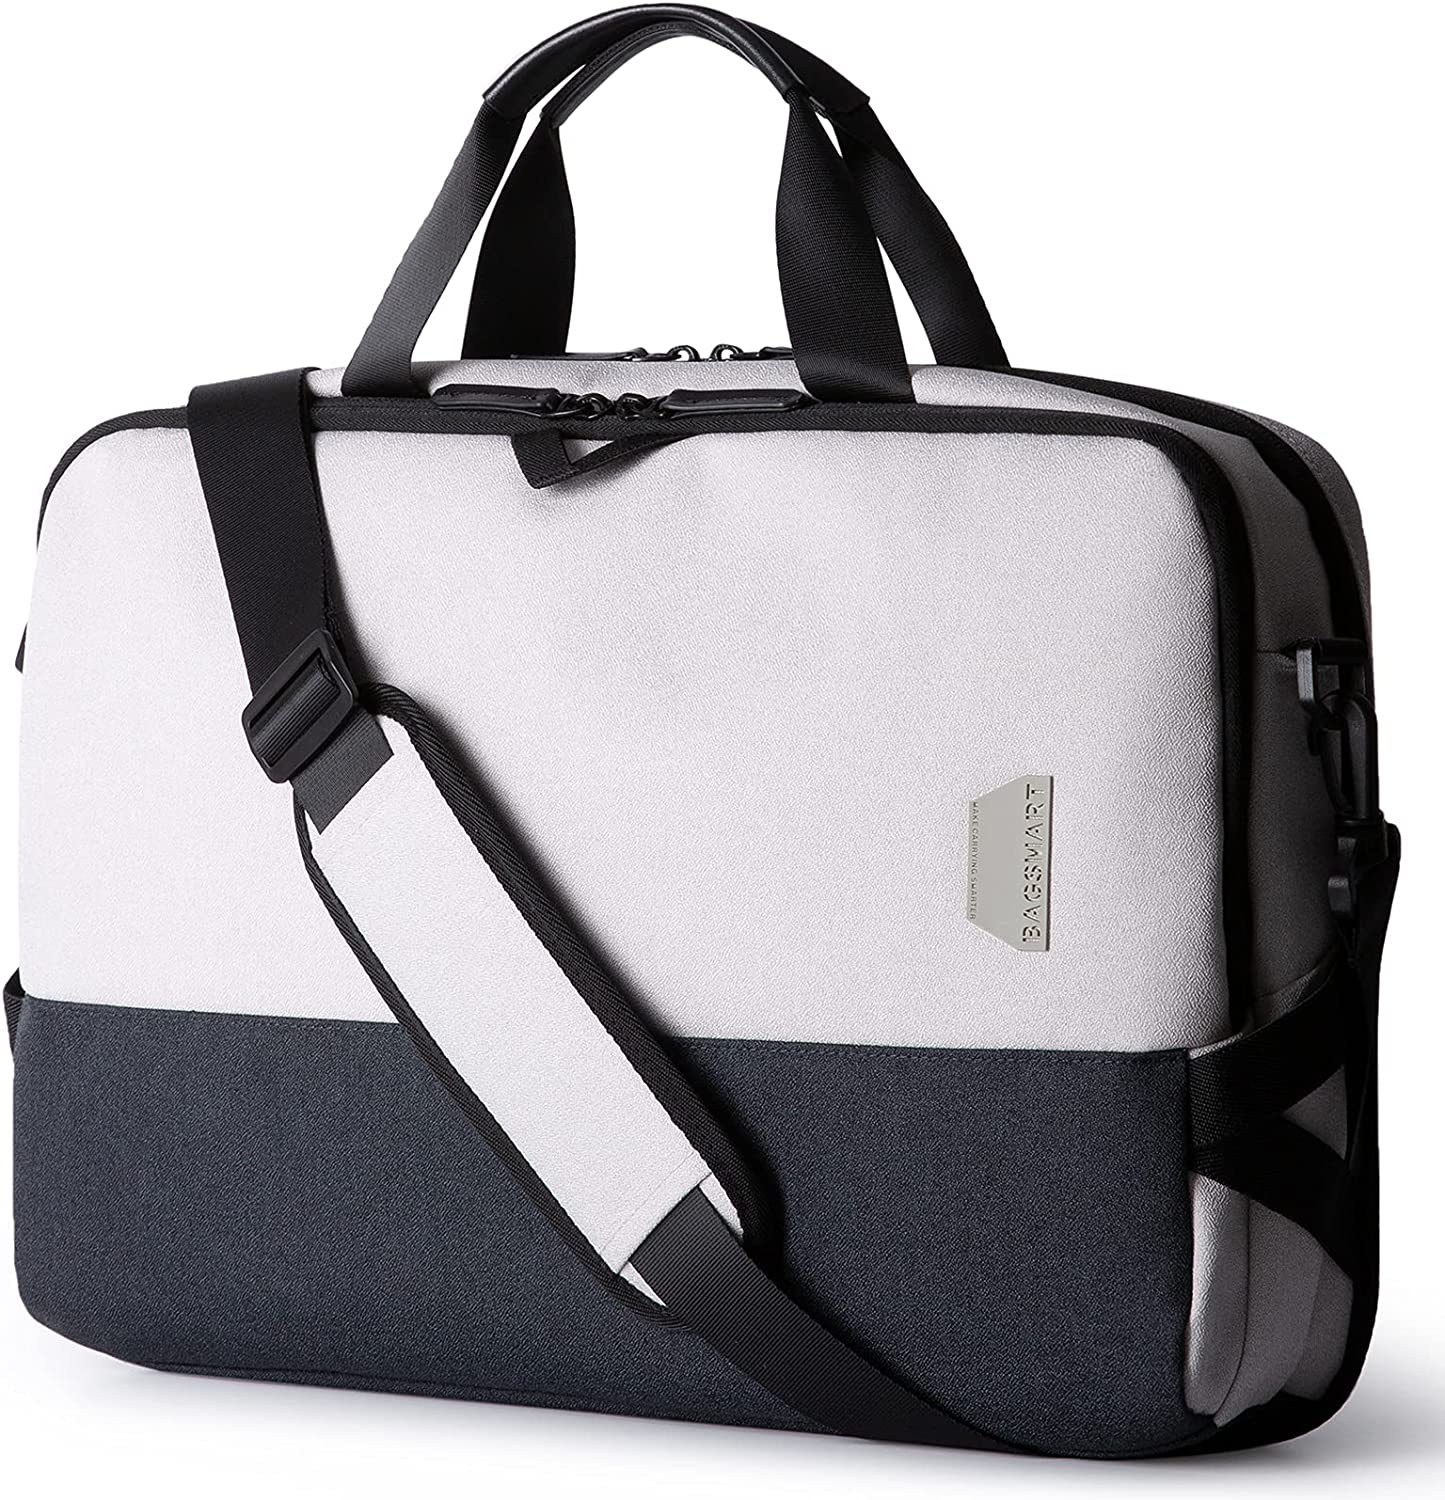 Laptop Bag,BAGSMART 15.6 Inch Laptop Case for Men Women Computer Bag Briefcase Work Business Travel